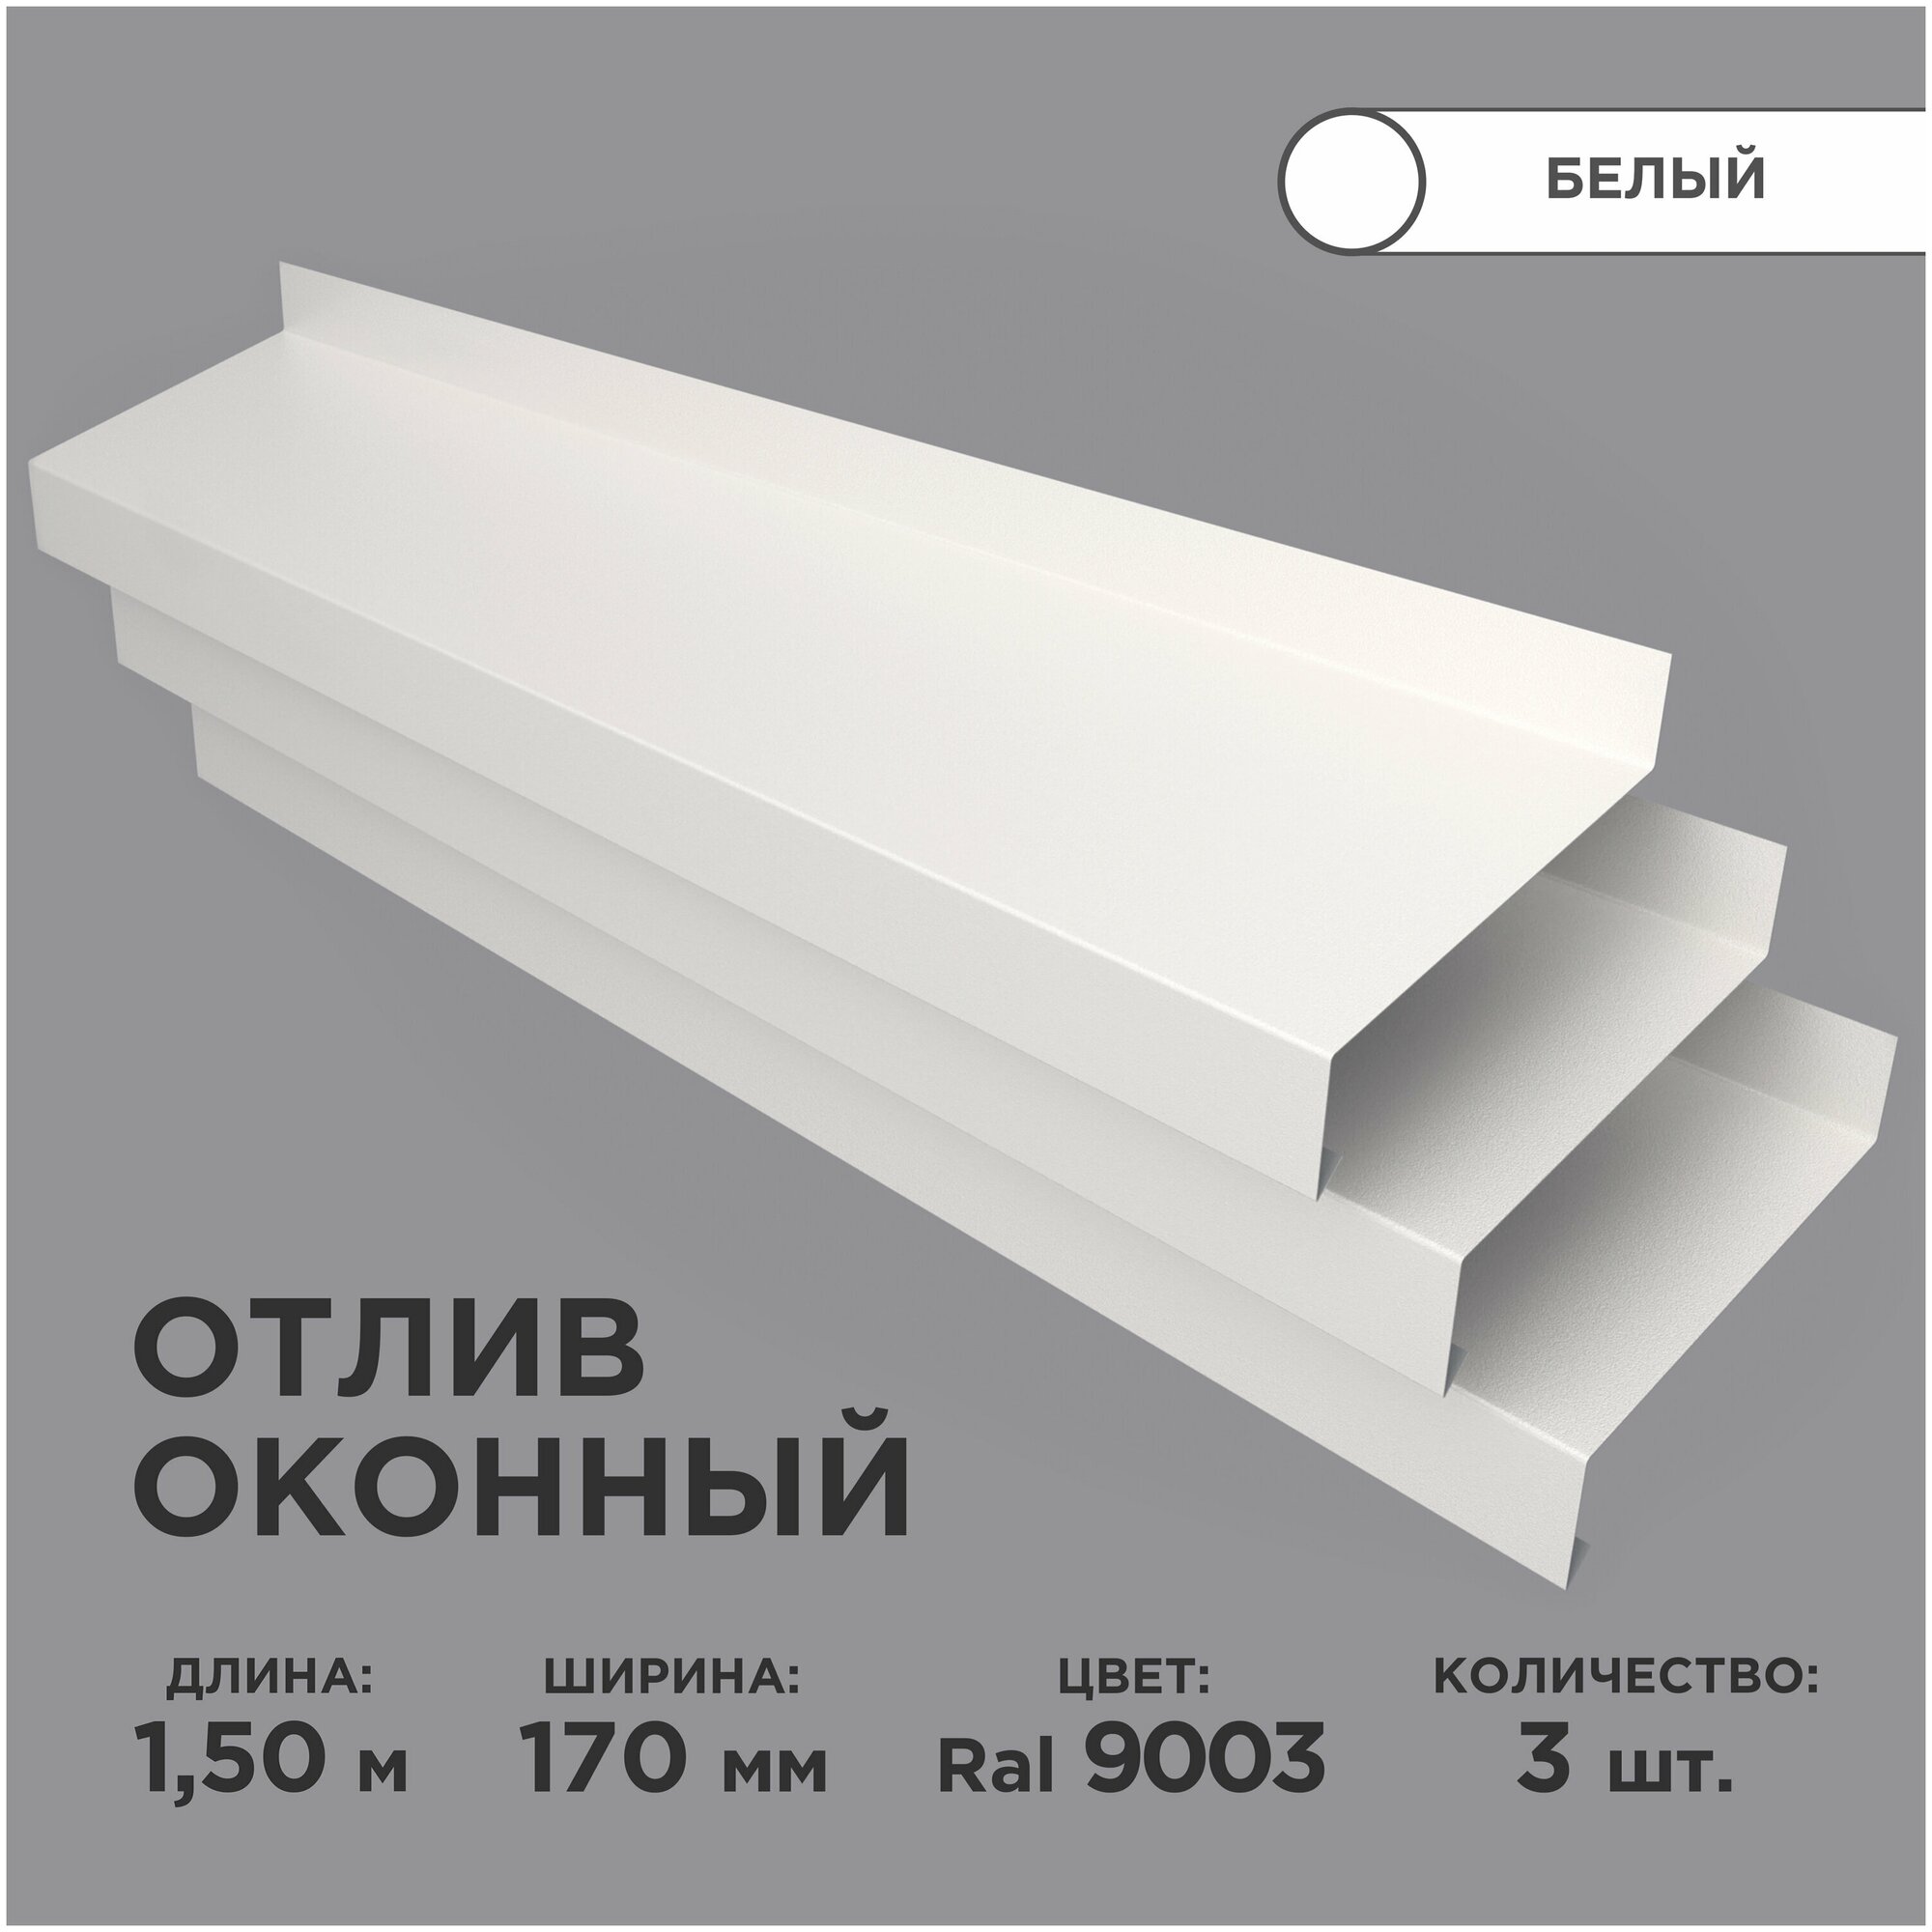 Отлив оконный ширина полки 170мм/ отлив для окна /цвет белый(RAL 9003) Длина 1,5м, 3 штуки в комплекте